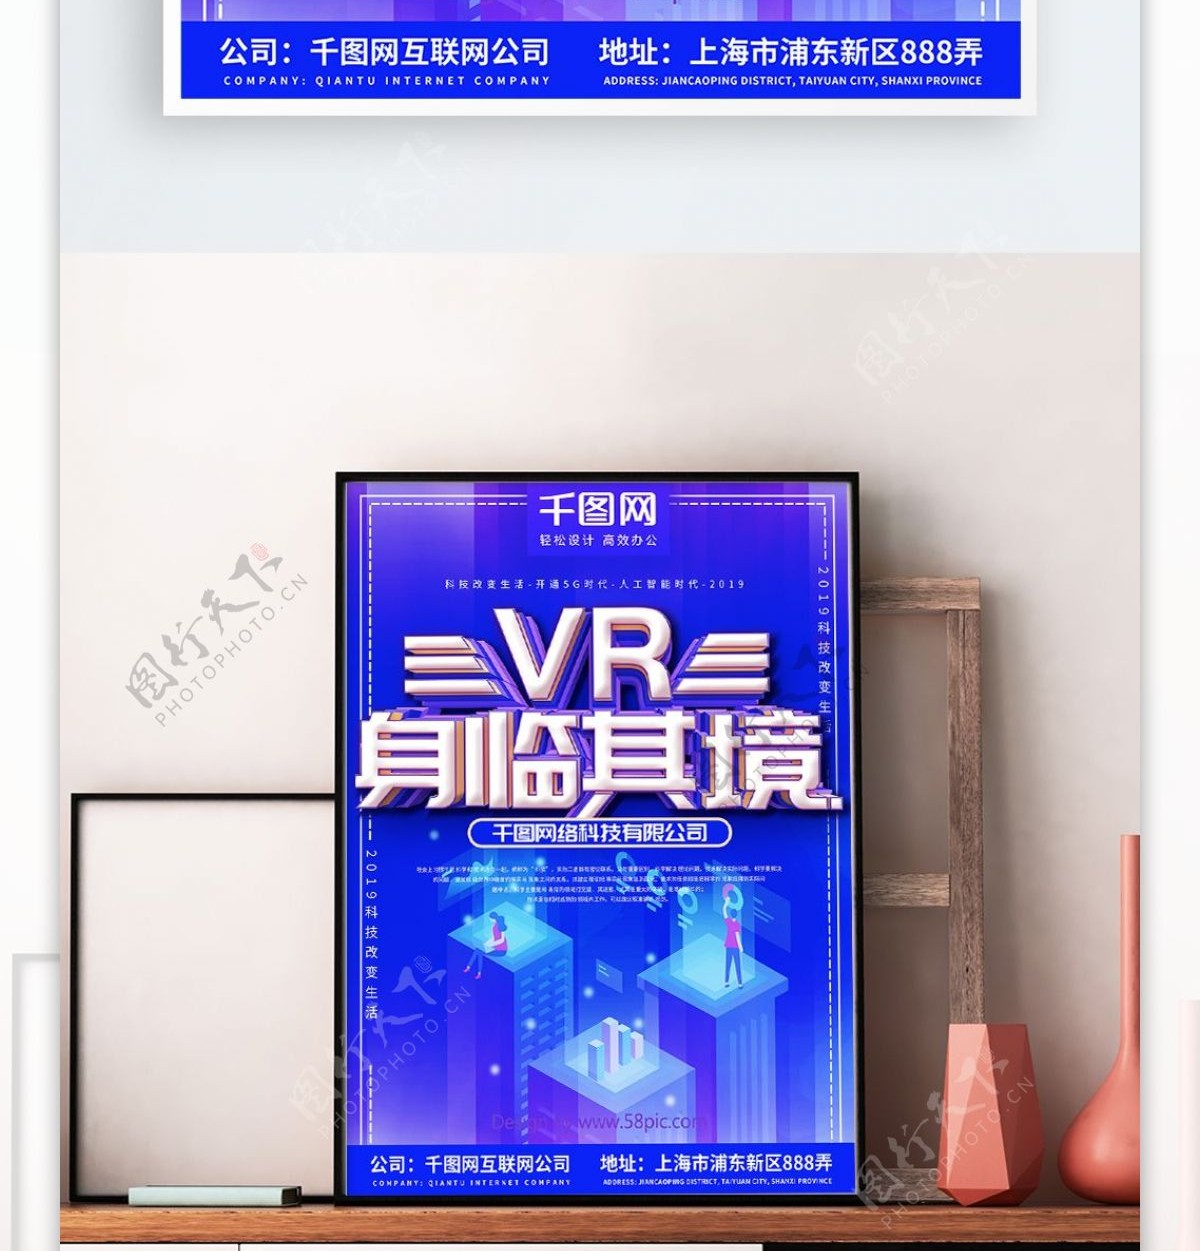 VR身临其境科技海报